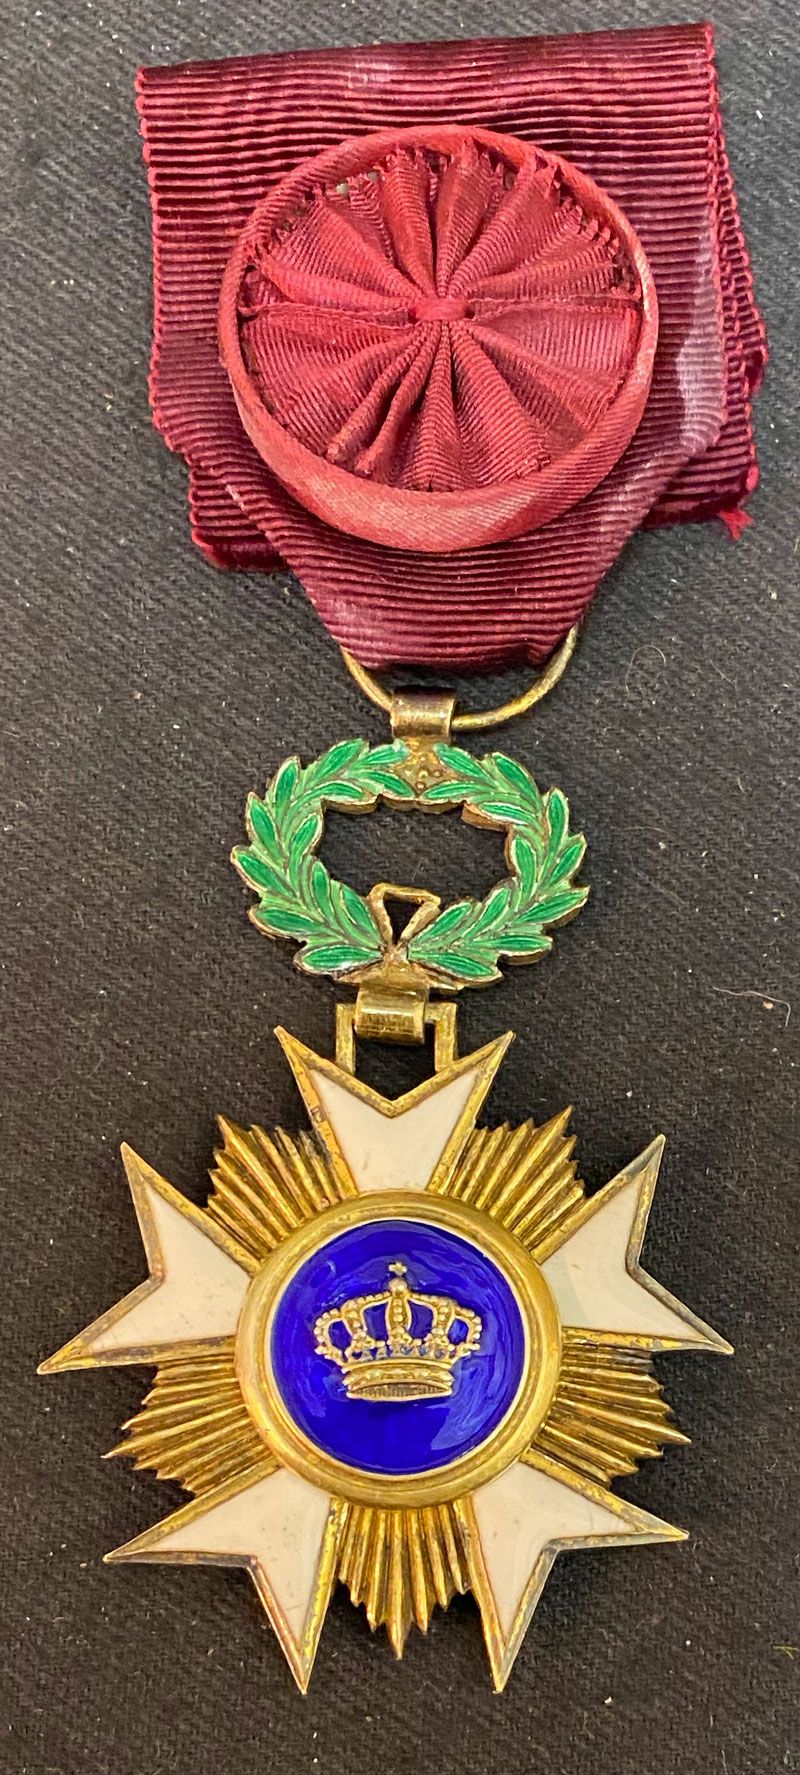 Null 比利时-王冠勋章，成立于1897年，镀金和珐琅的军官之星，染色玫瑰花带。
64 x 43 mm
比利时，20世纪初。
TTB